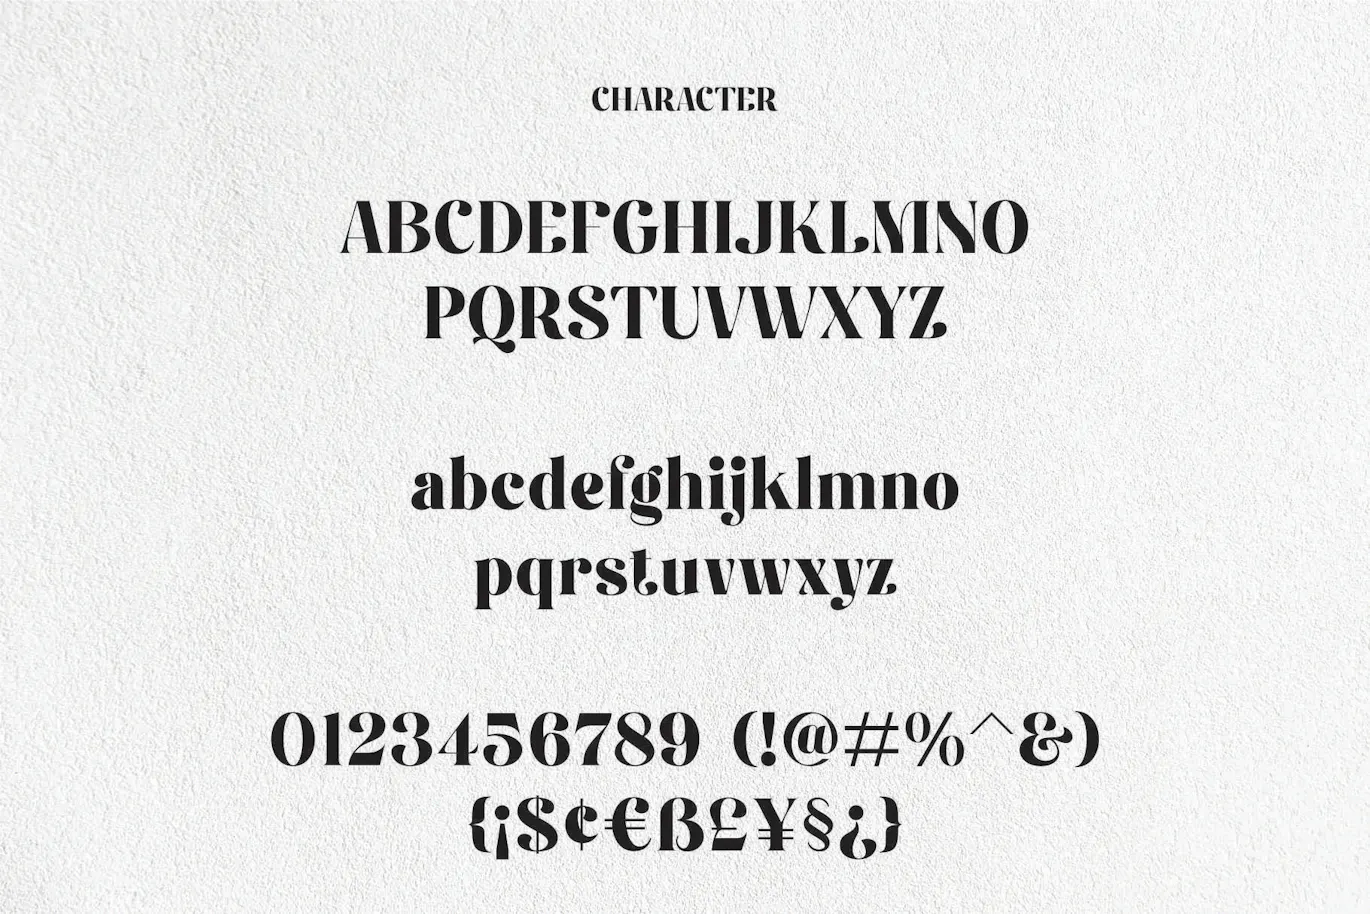 独特且非常优雅的英文字体 - Fiontina Display Typeface Font 设计字体 第9张